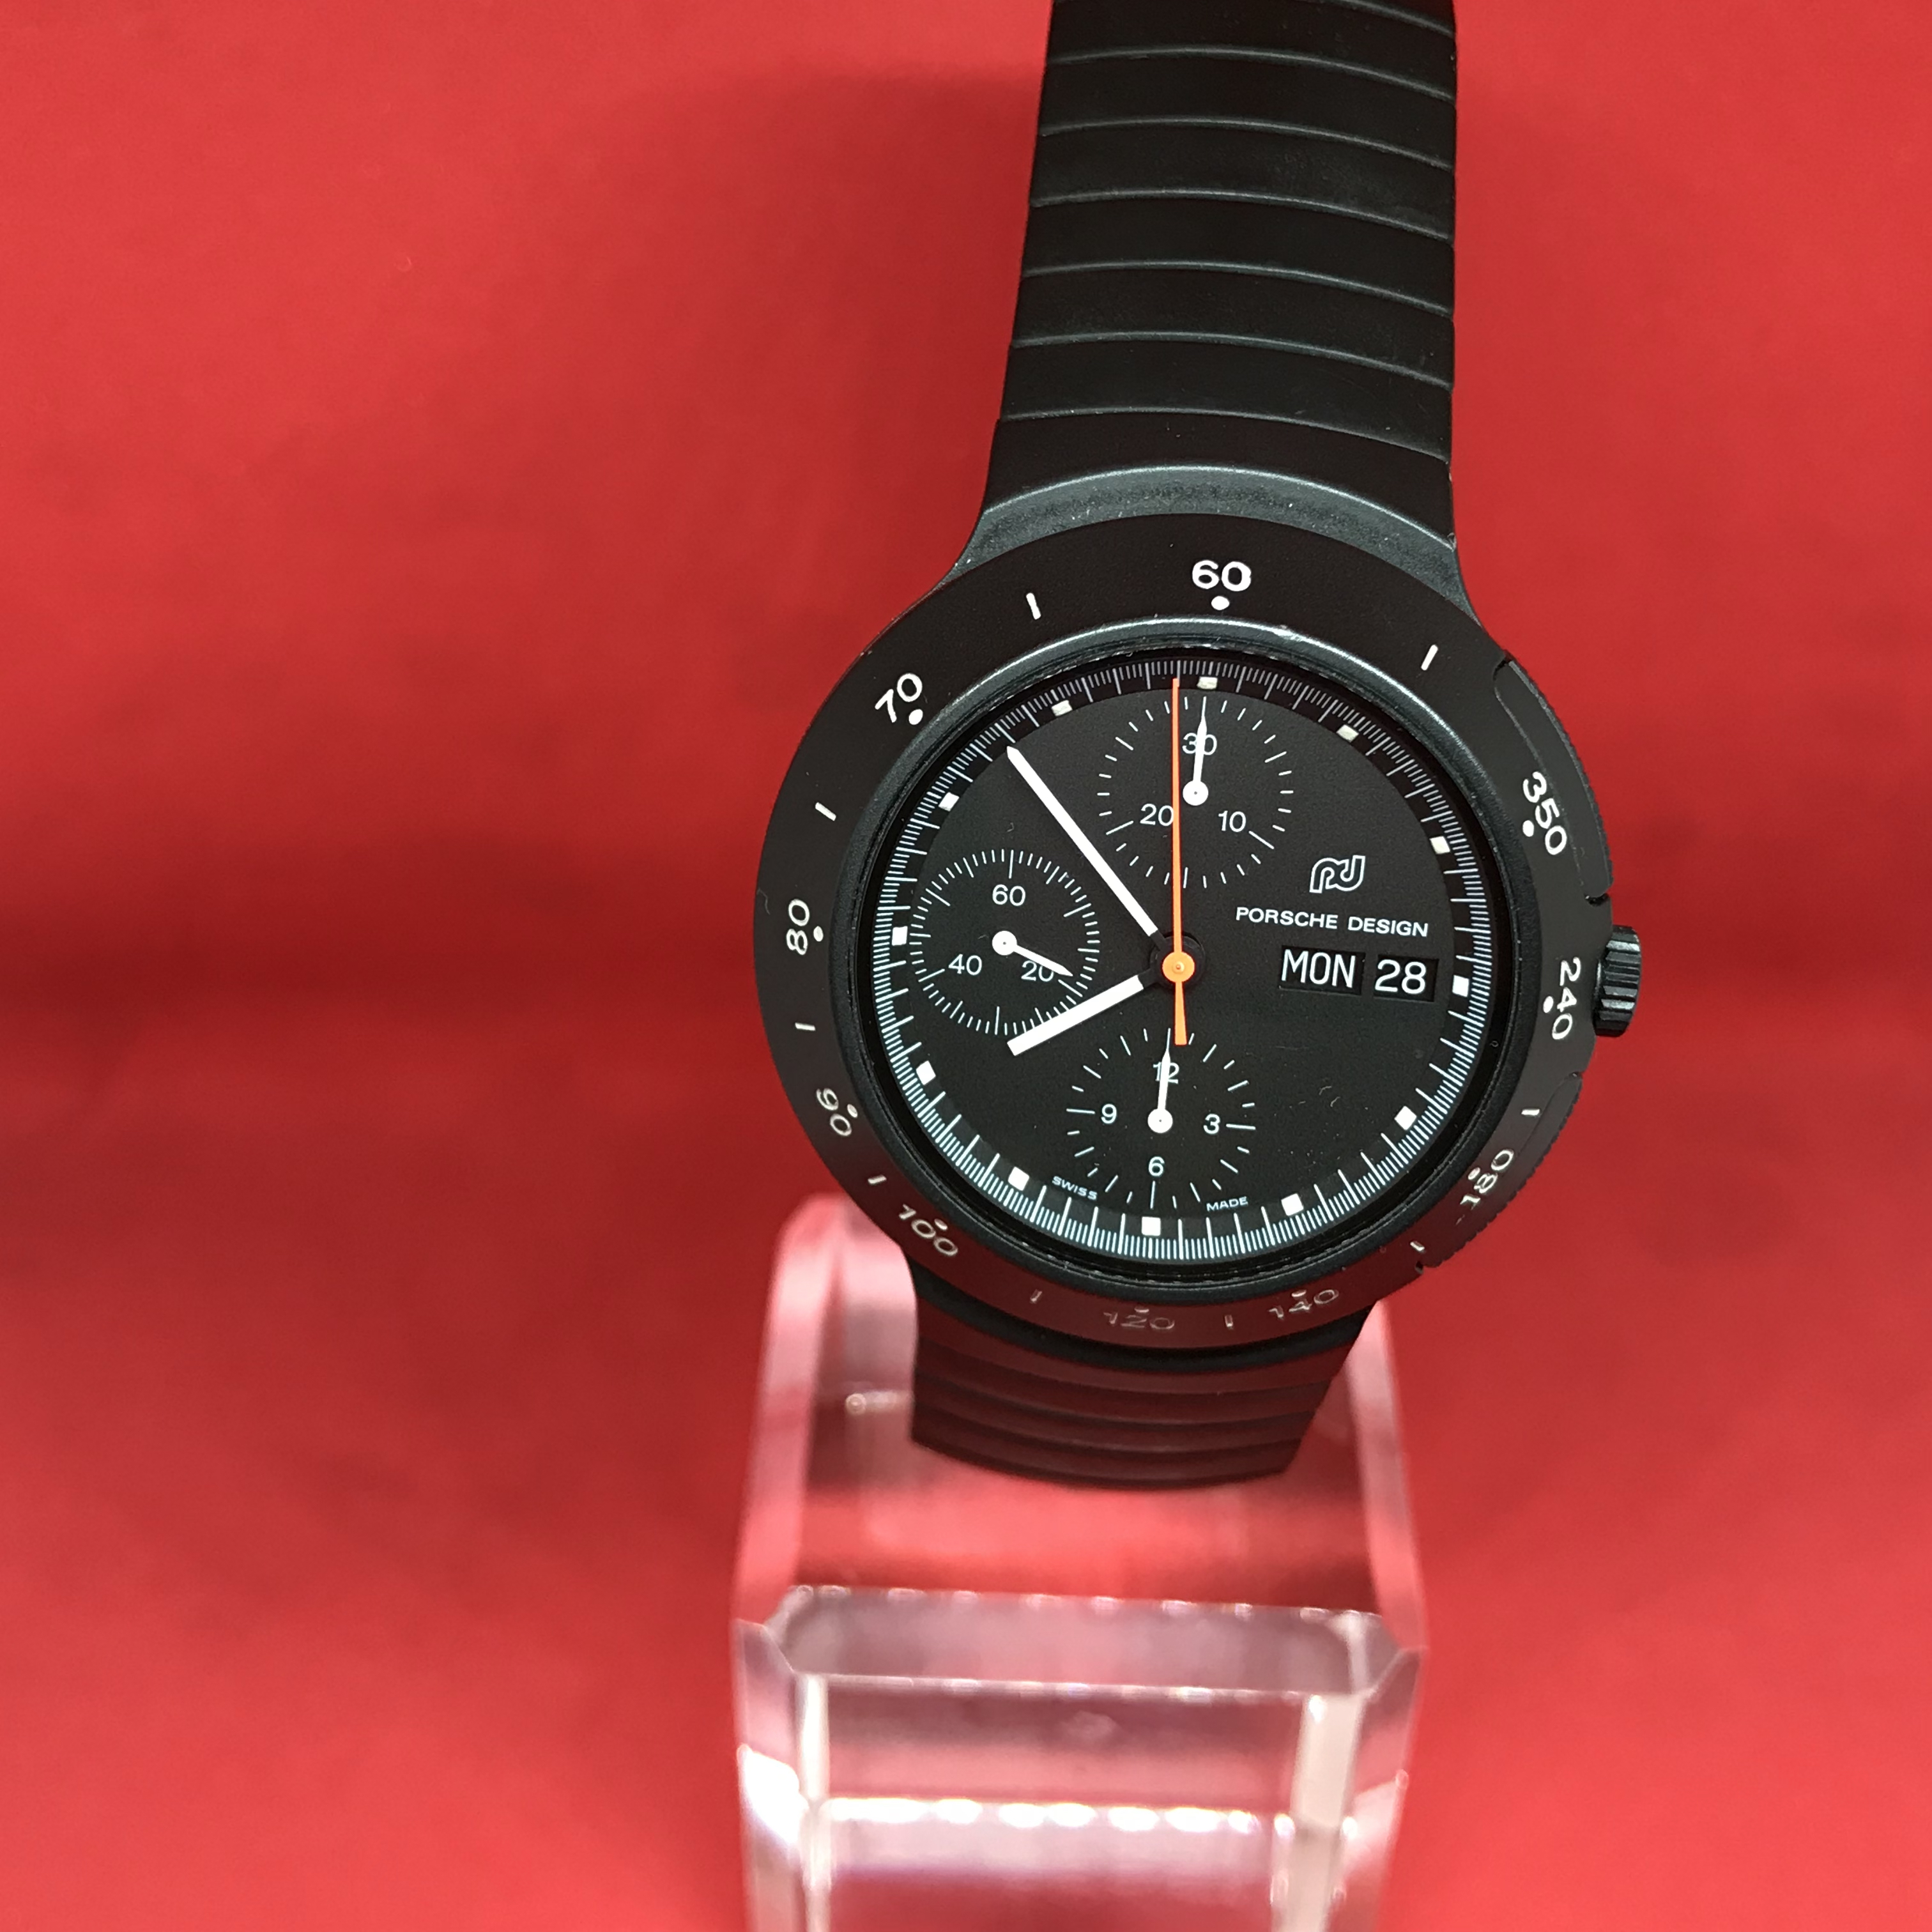 IWC Porsche Design Automatic Watch Calibre 790. Valjoux Movement.